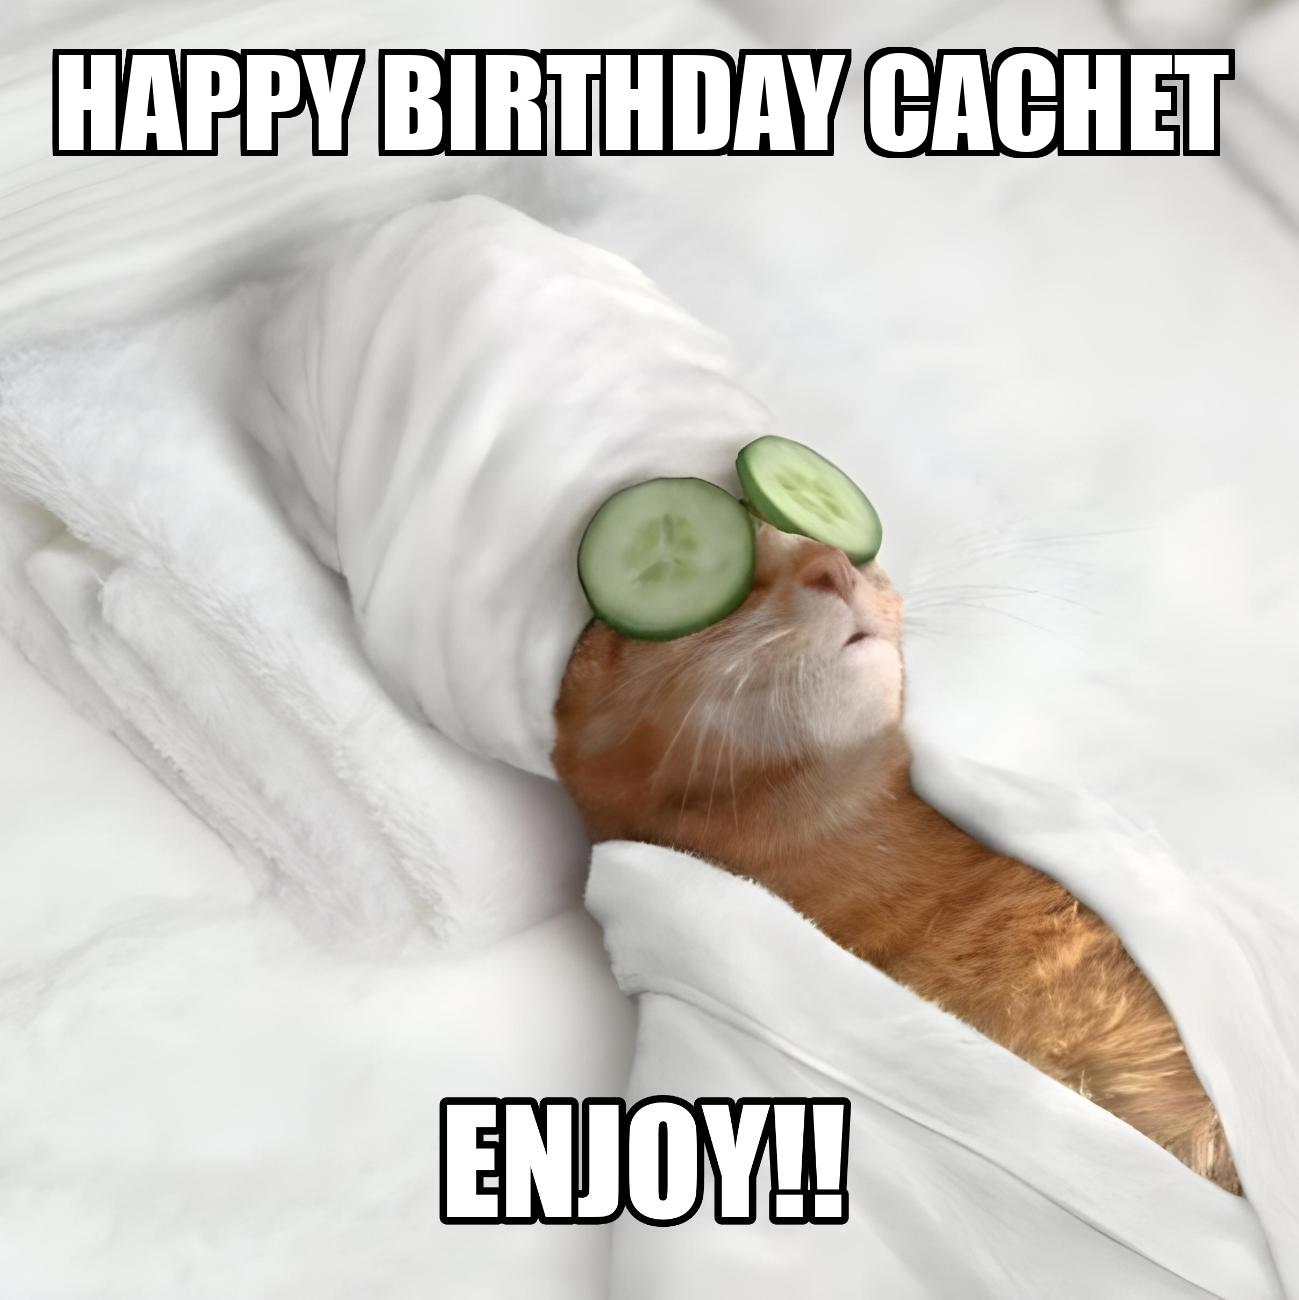 Happy Birthday Cachet Enjoy Cat Meme